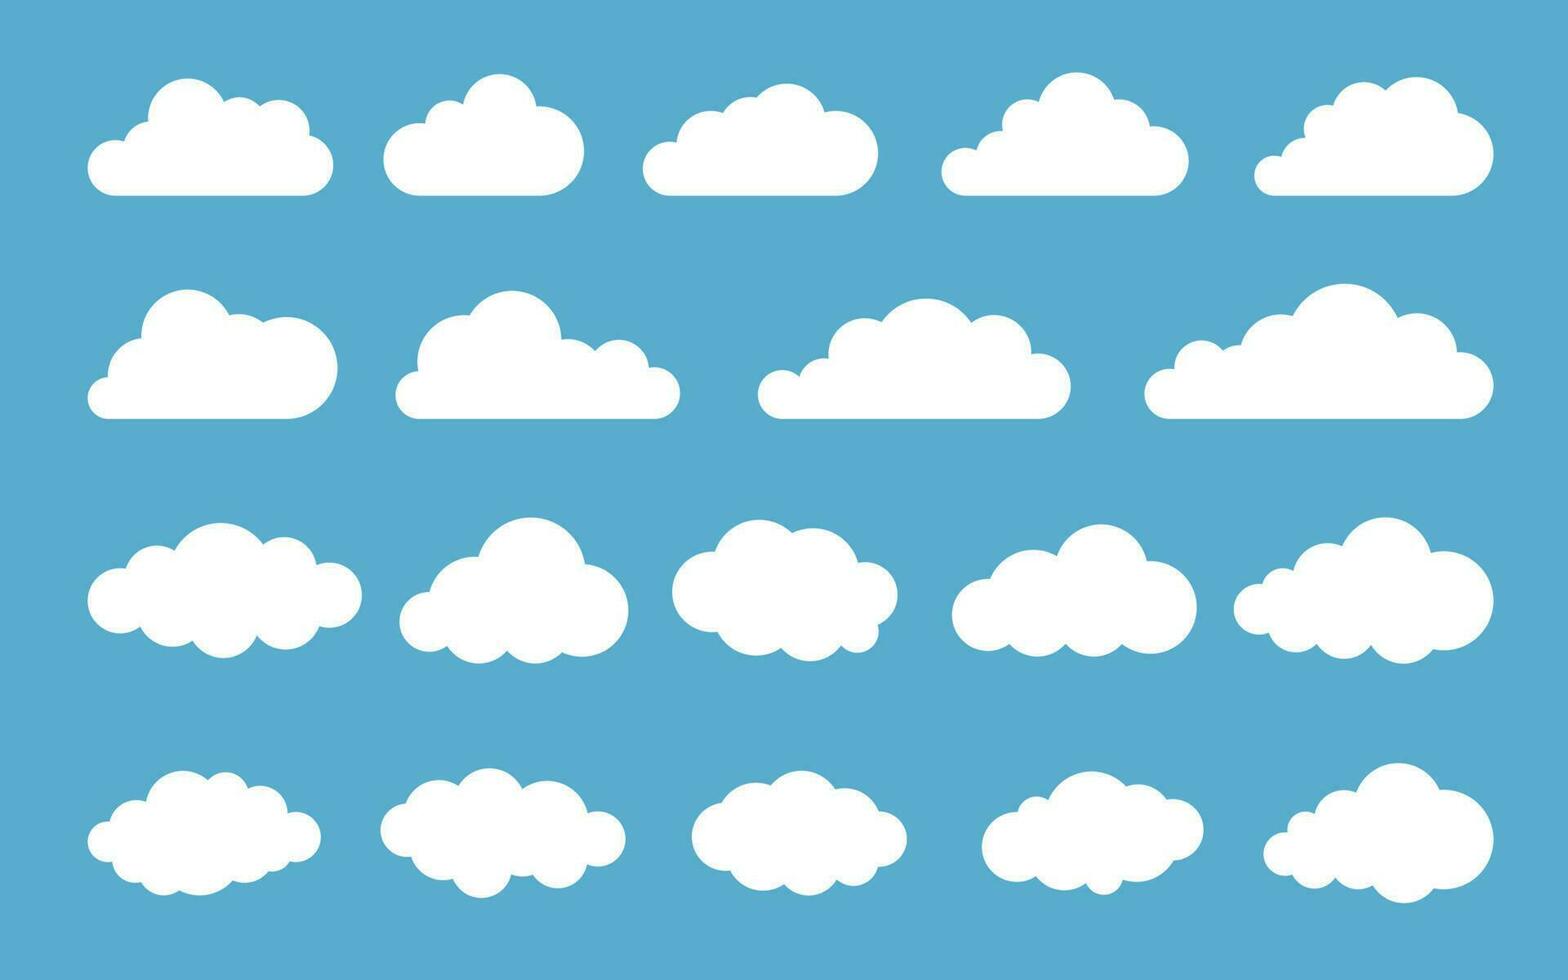 Wolke. abstrakter weißer bewölkter Satz lokalisiert auf blauem Hintergrund. Vektor-Illustration vektor